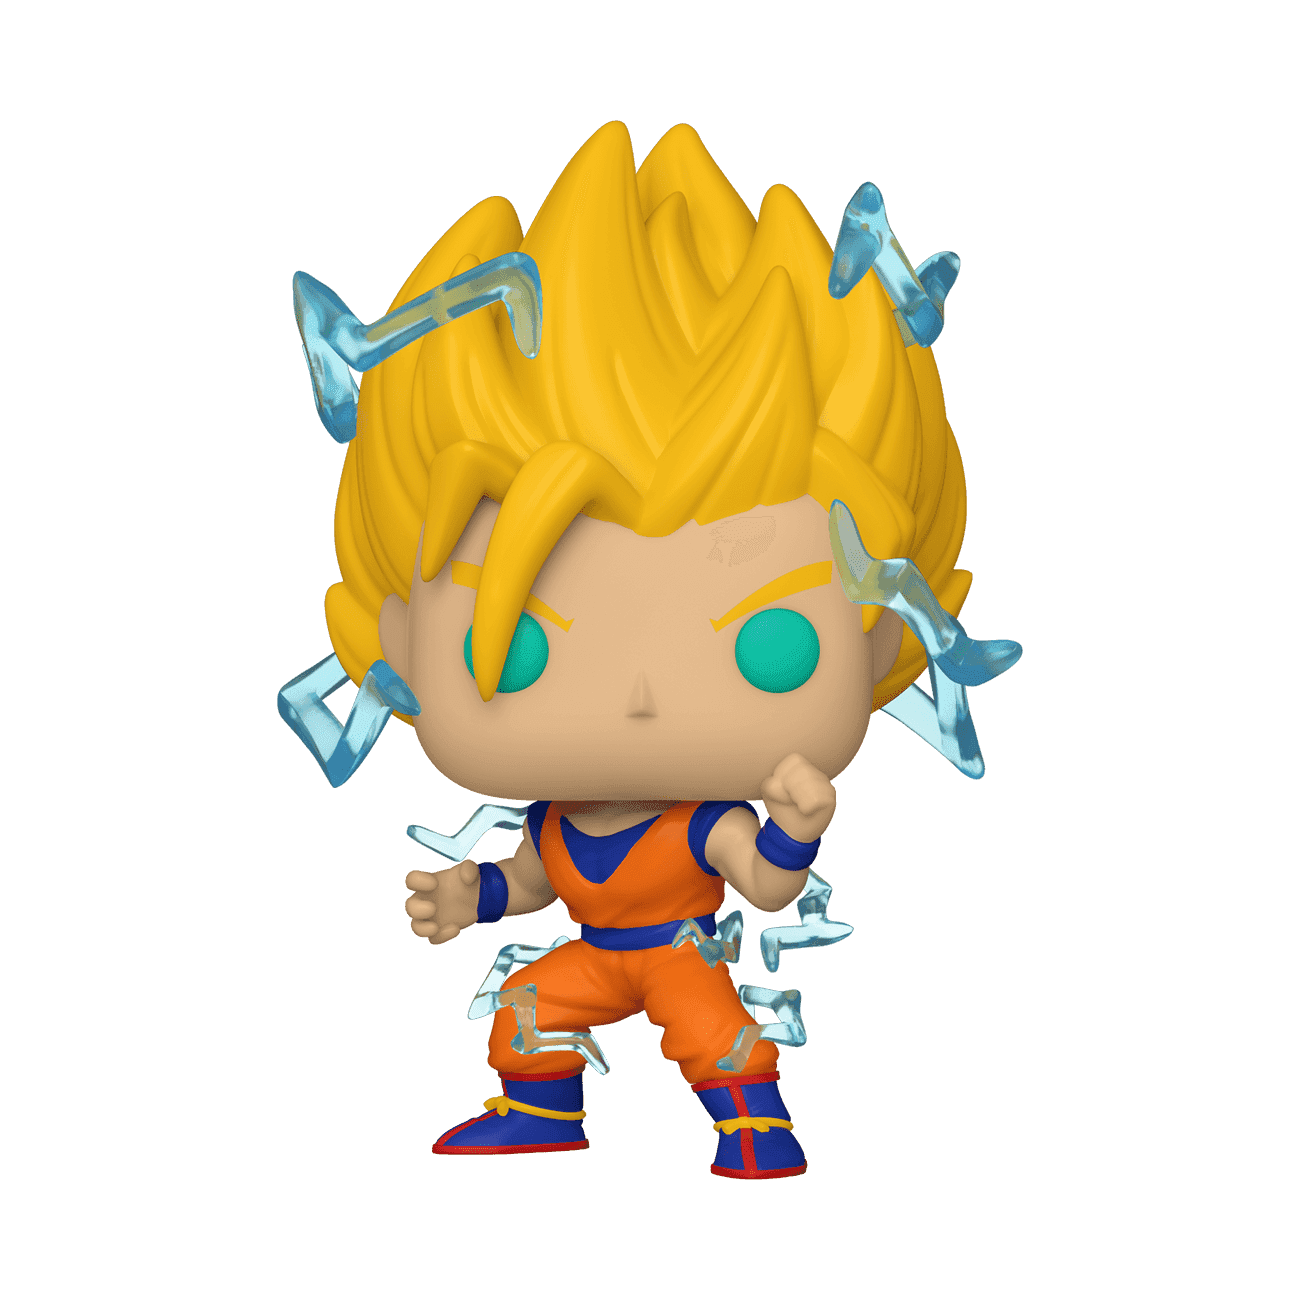 image de Goku